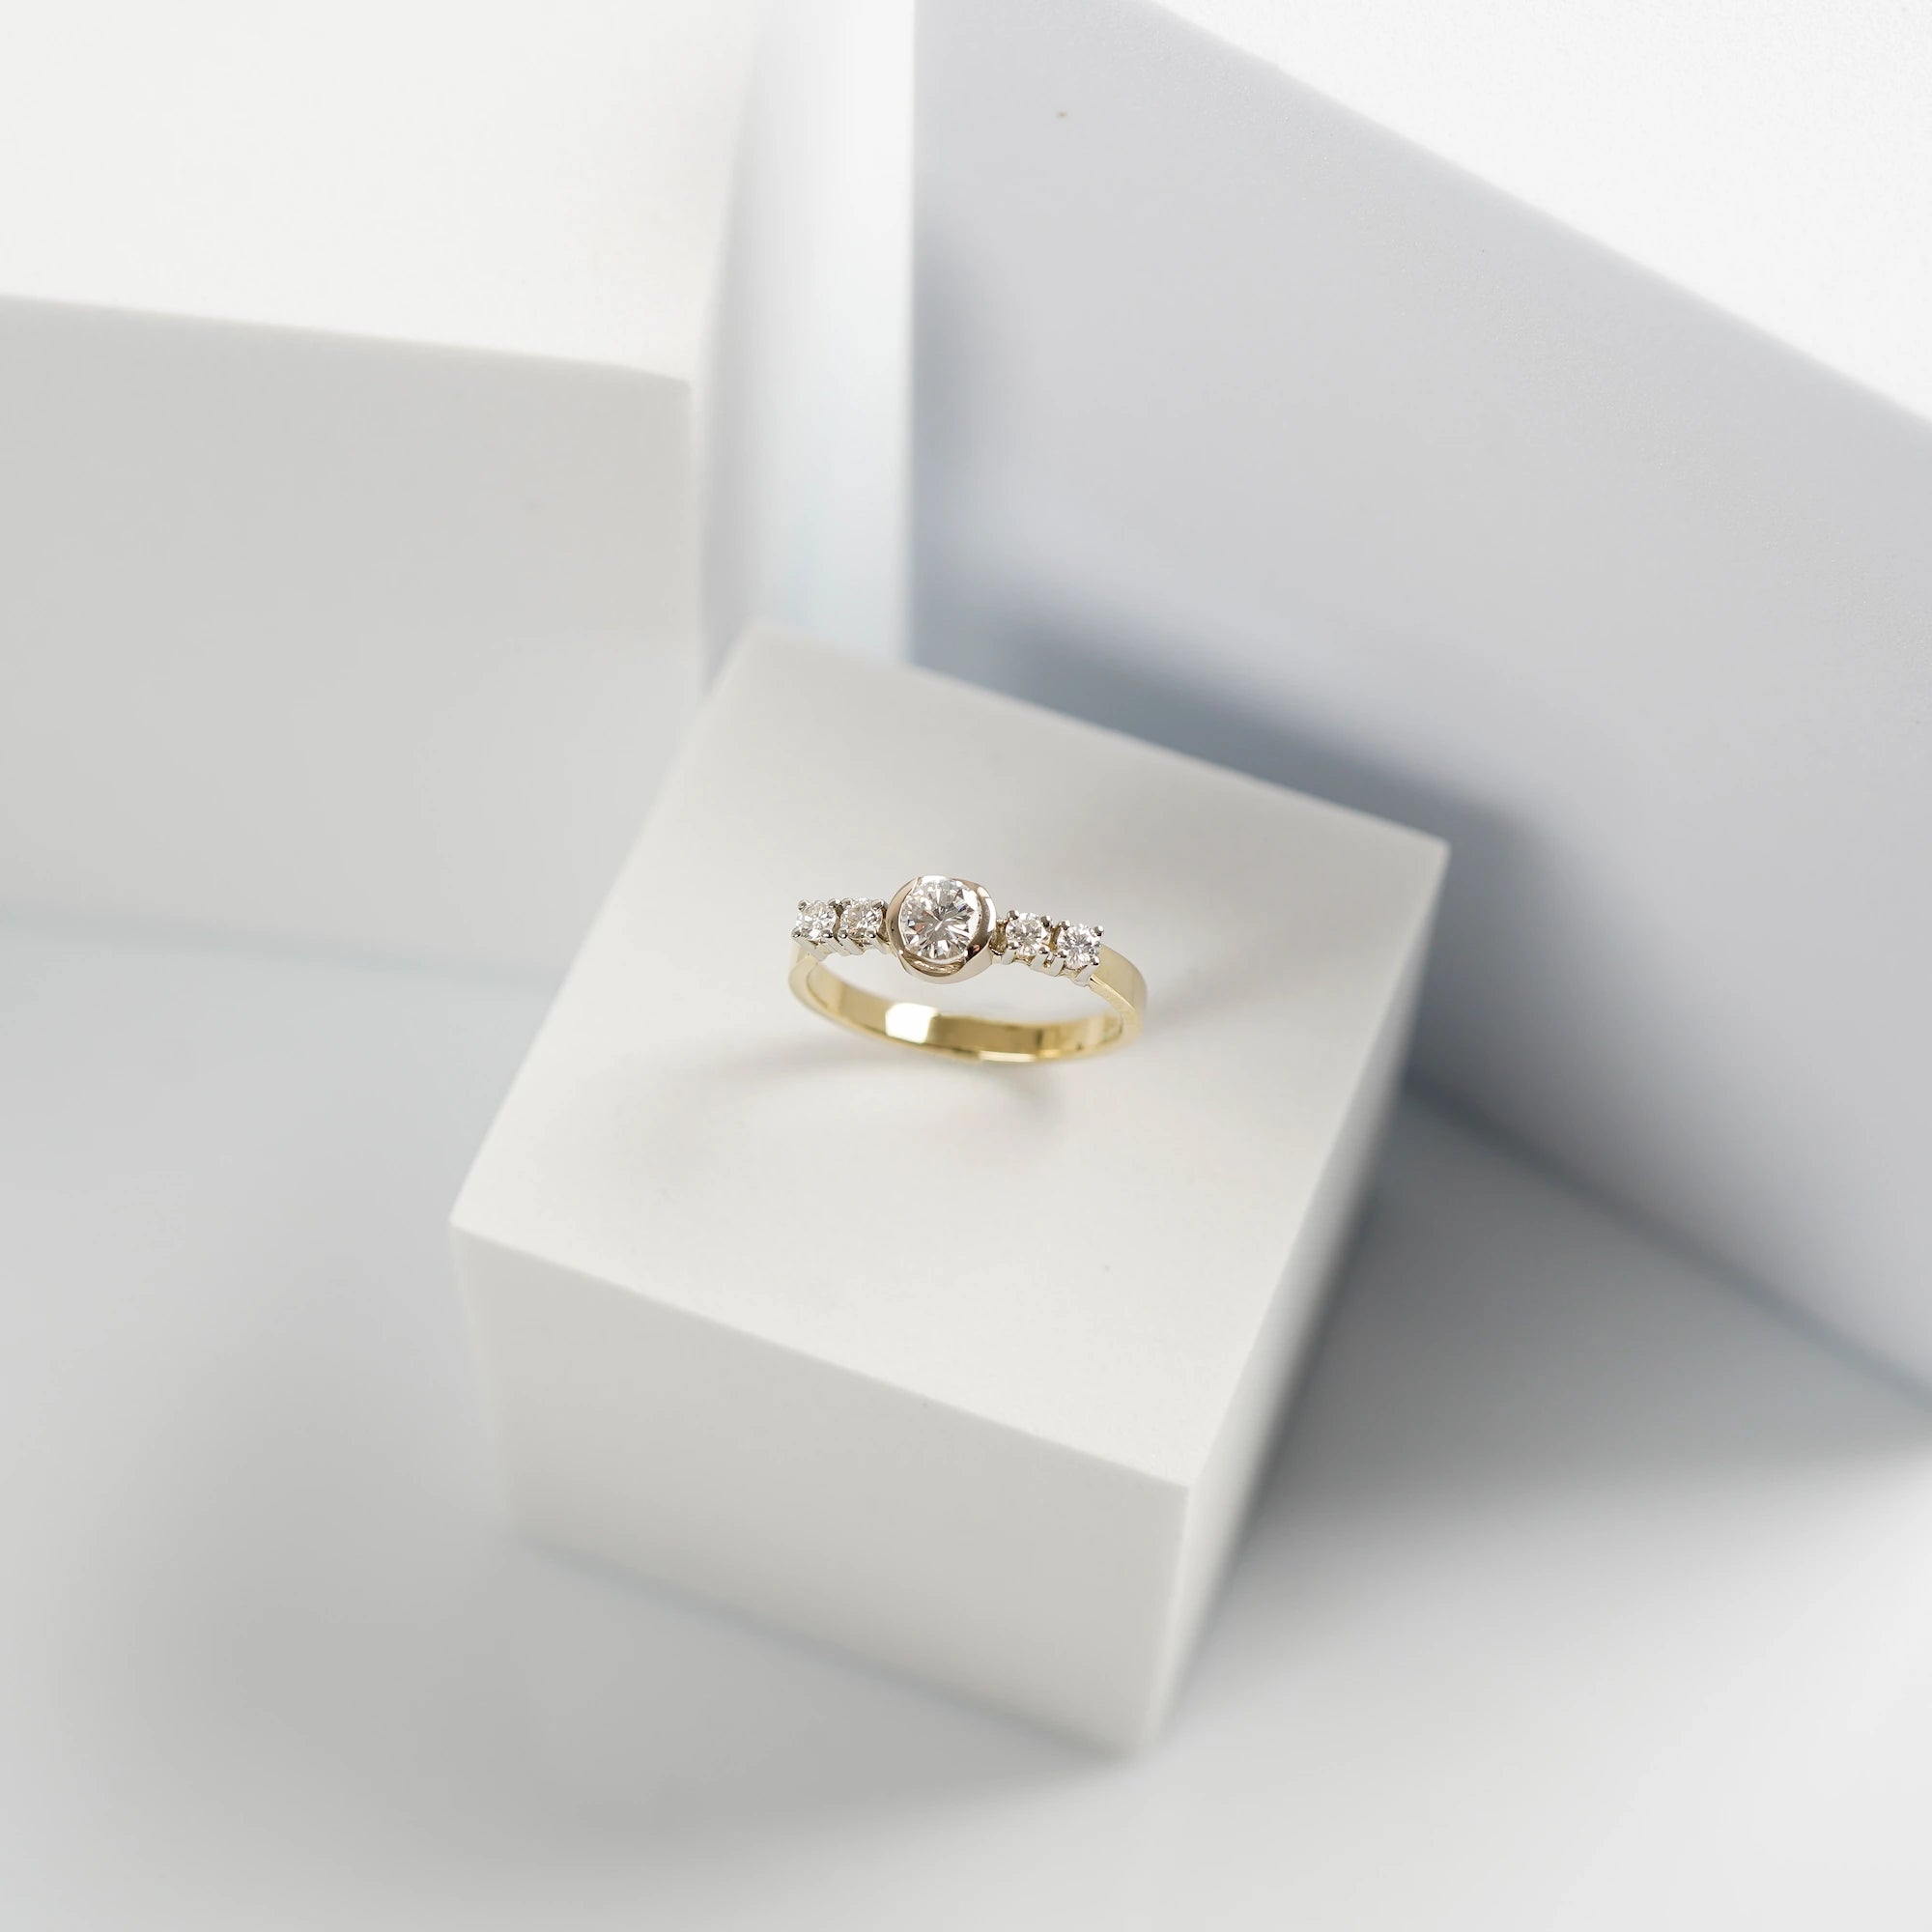 Produktfoto des gelbgoldenen Ring mit 5 gefassten Diamanten auf der Ringschiene, wovon der zentrale Stein der Größte ist